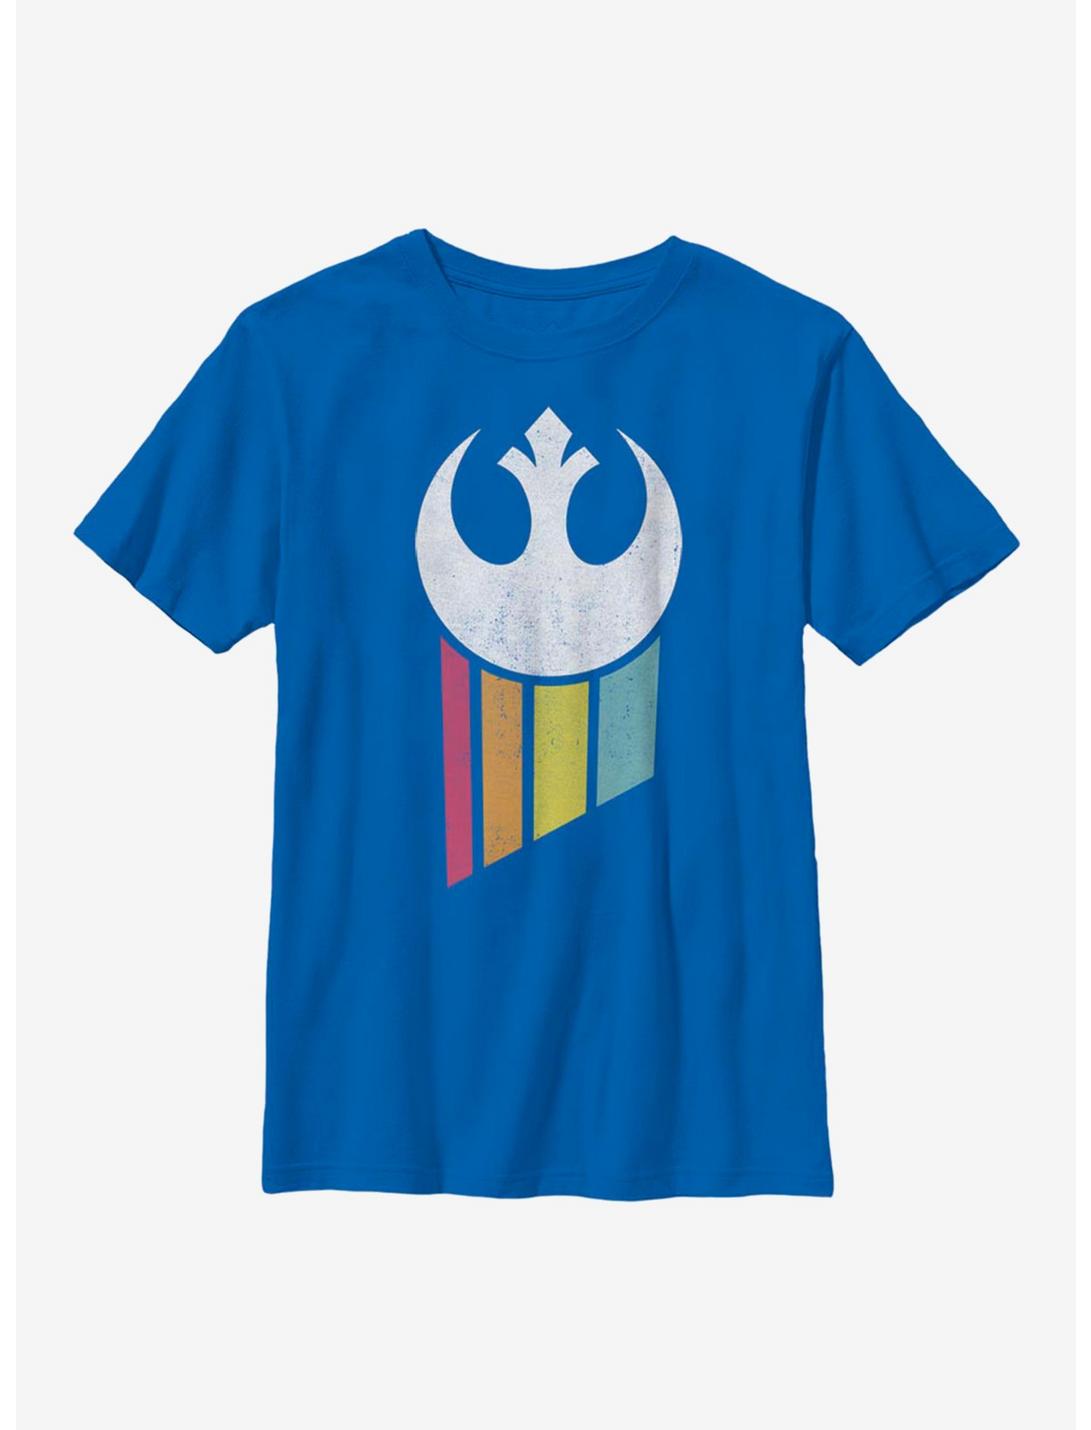 Star Wars Rainbow Rebel Logo Youth T-Shirt, ROYAL, hi-res